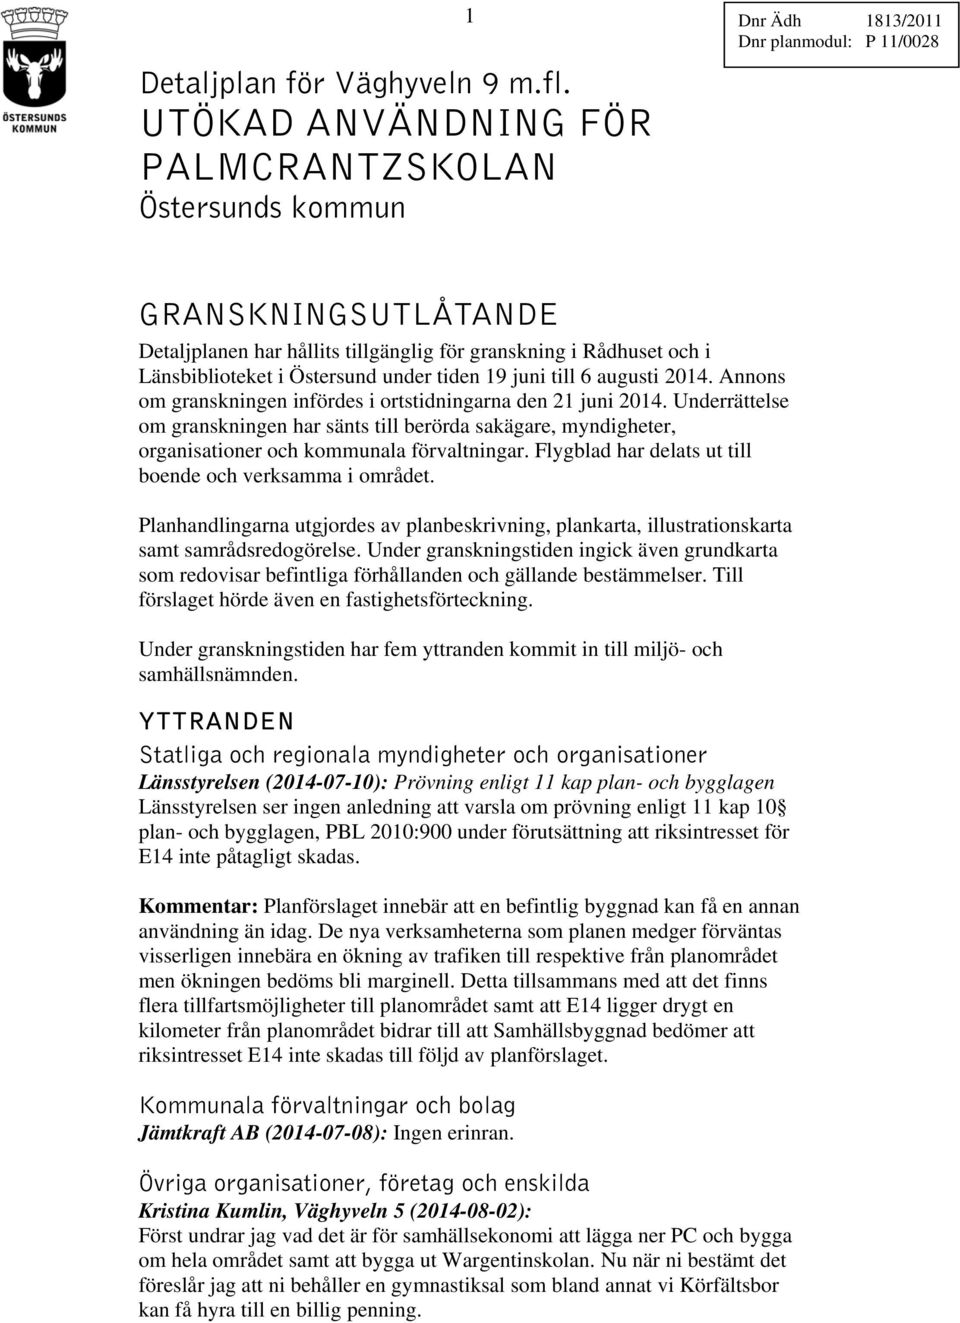 Länsbiblioteket i Östersund under tiden 19 juni till 6 augusti 2014. Annons om granskningen infördes i ortstidningarna den 21 juni 2014.